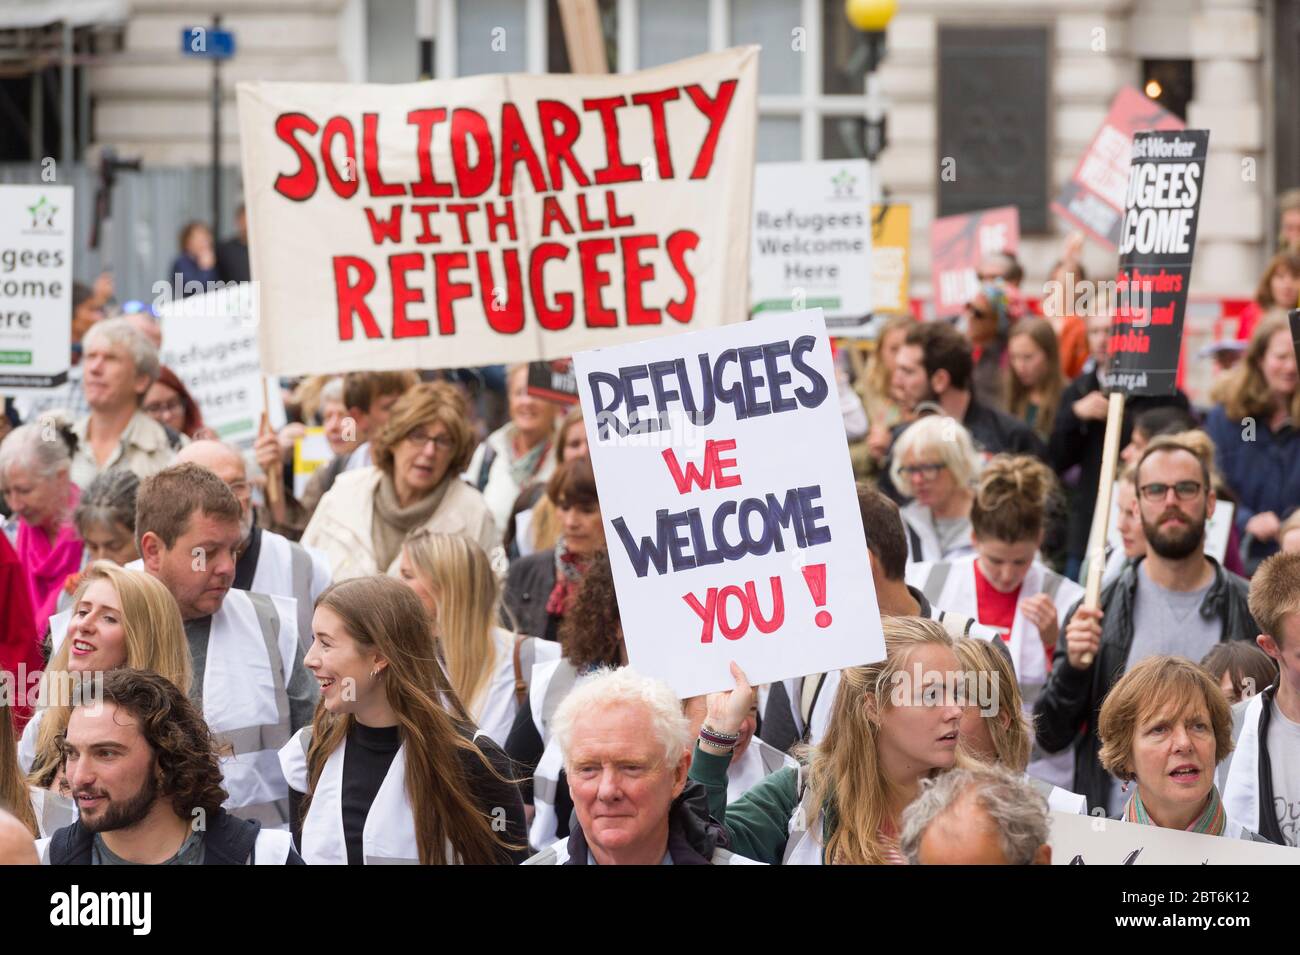 ‘Flüchtlinge willkommen hier’ marsch von Park Lane zum Parliament Square, um Solidarität mit Flüchtlingen zu zeigen, Piccadilly, London, Großbritannien. 17 Sept. 2016 Stockfoto